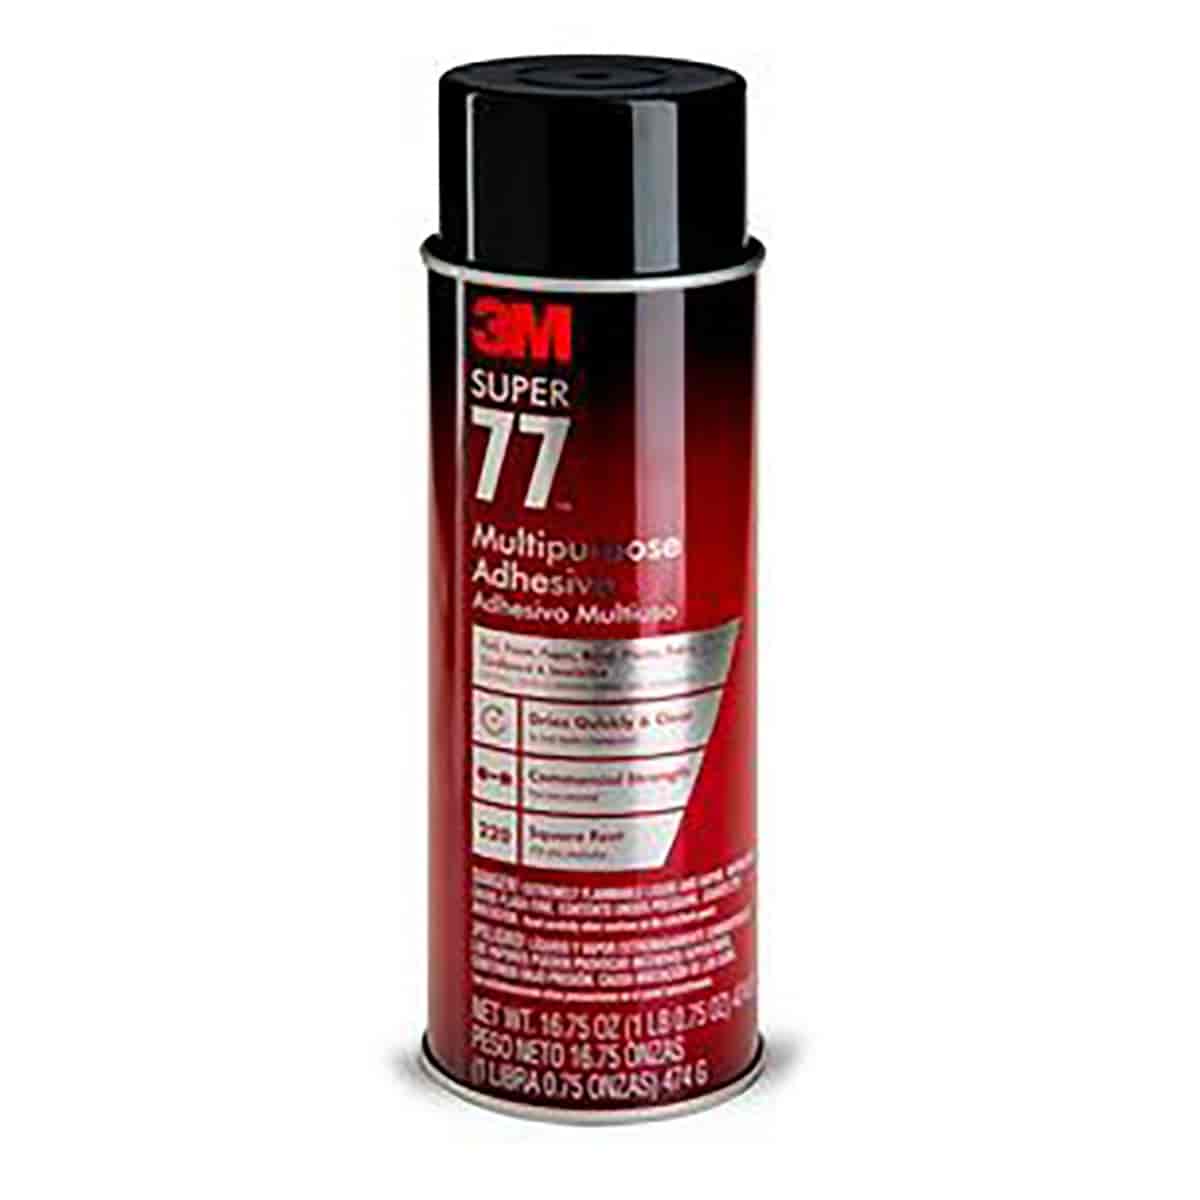 Super 77 Multipurpose Adhesive 77-24VOC30 Low VOC